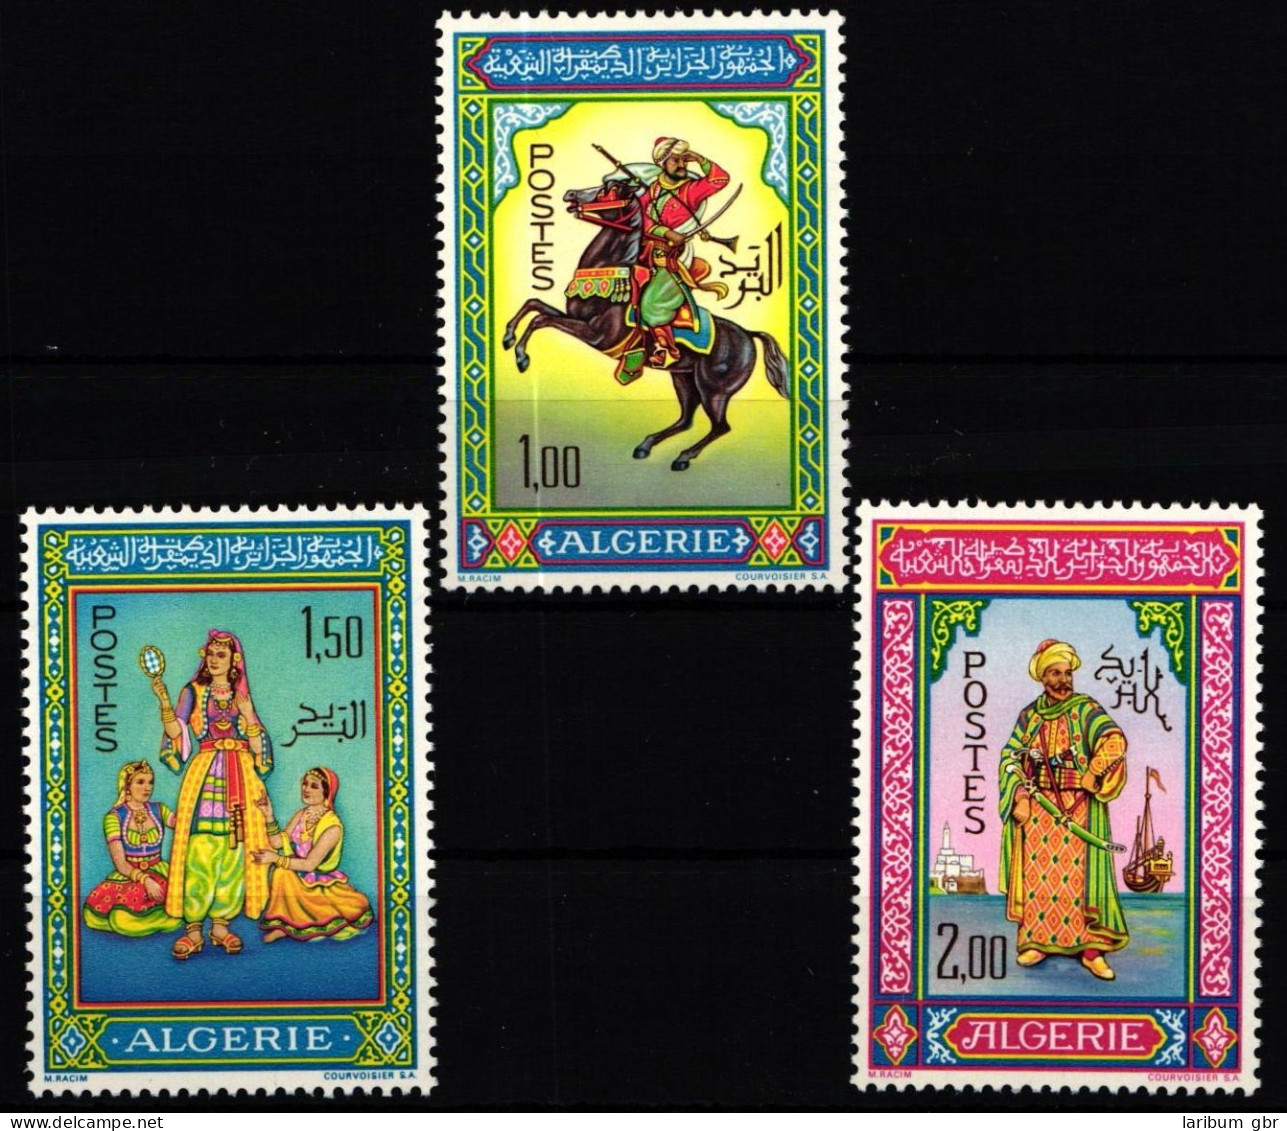 Algerien 464-466 Postfrisch #KX159 - Algeria (1962-...)